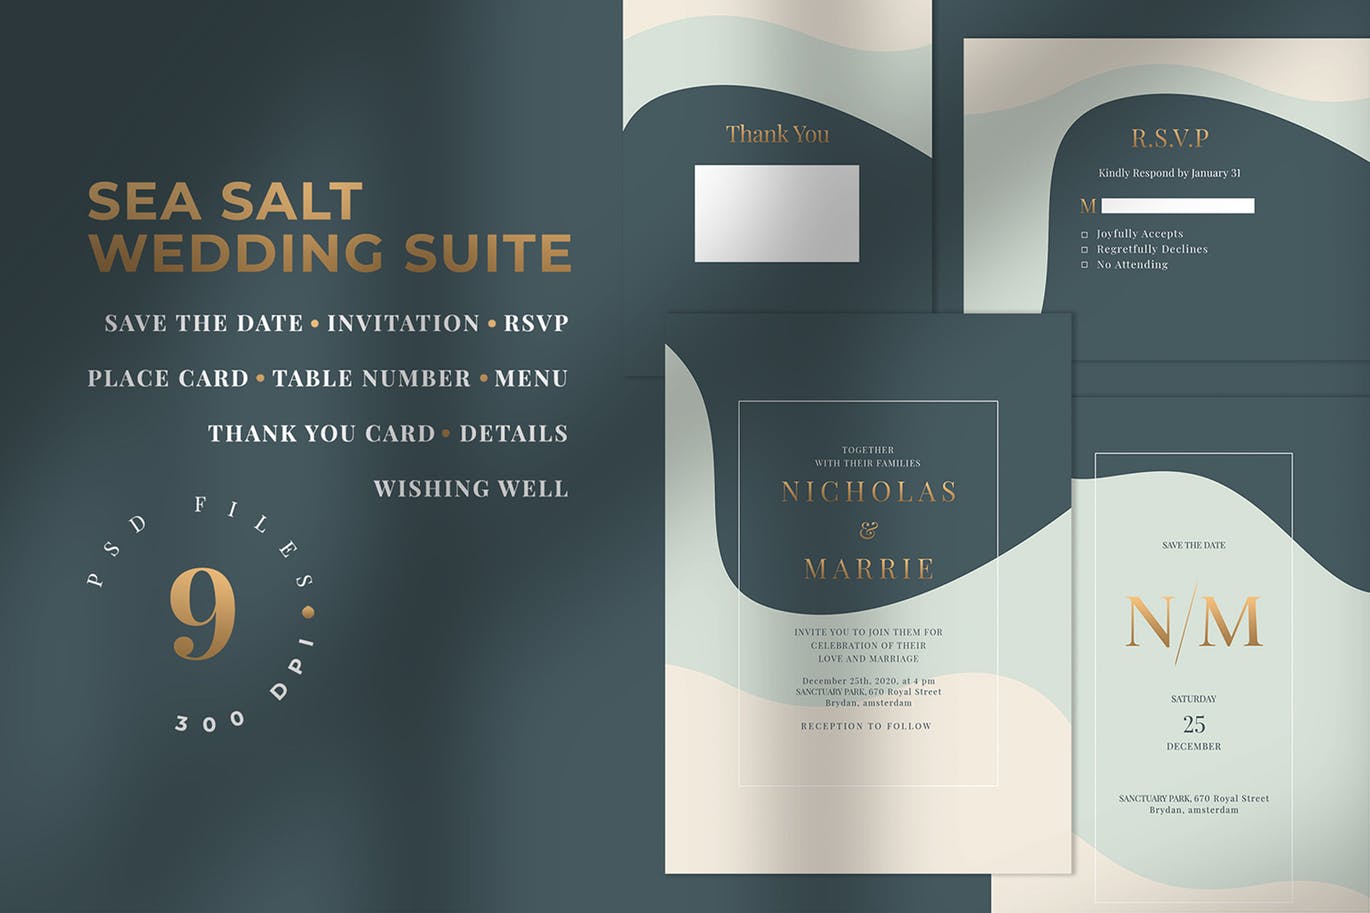 三色背景婚礼邀请设计素材包 SEA SALT – Wedding Invitation Suite插图(1)